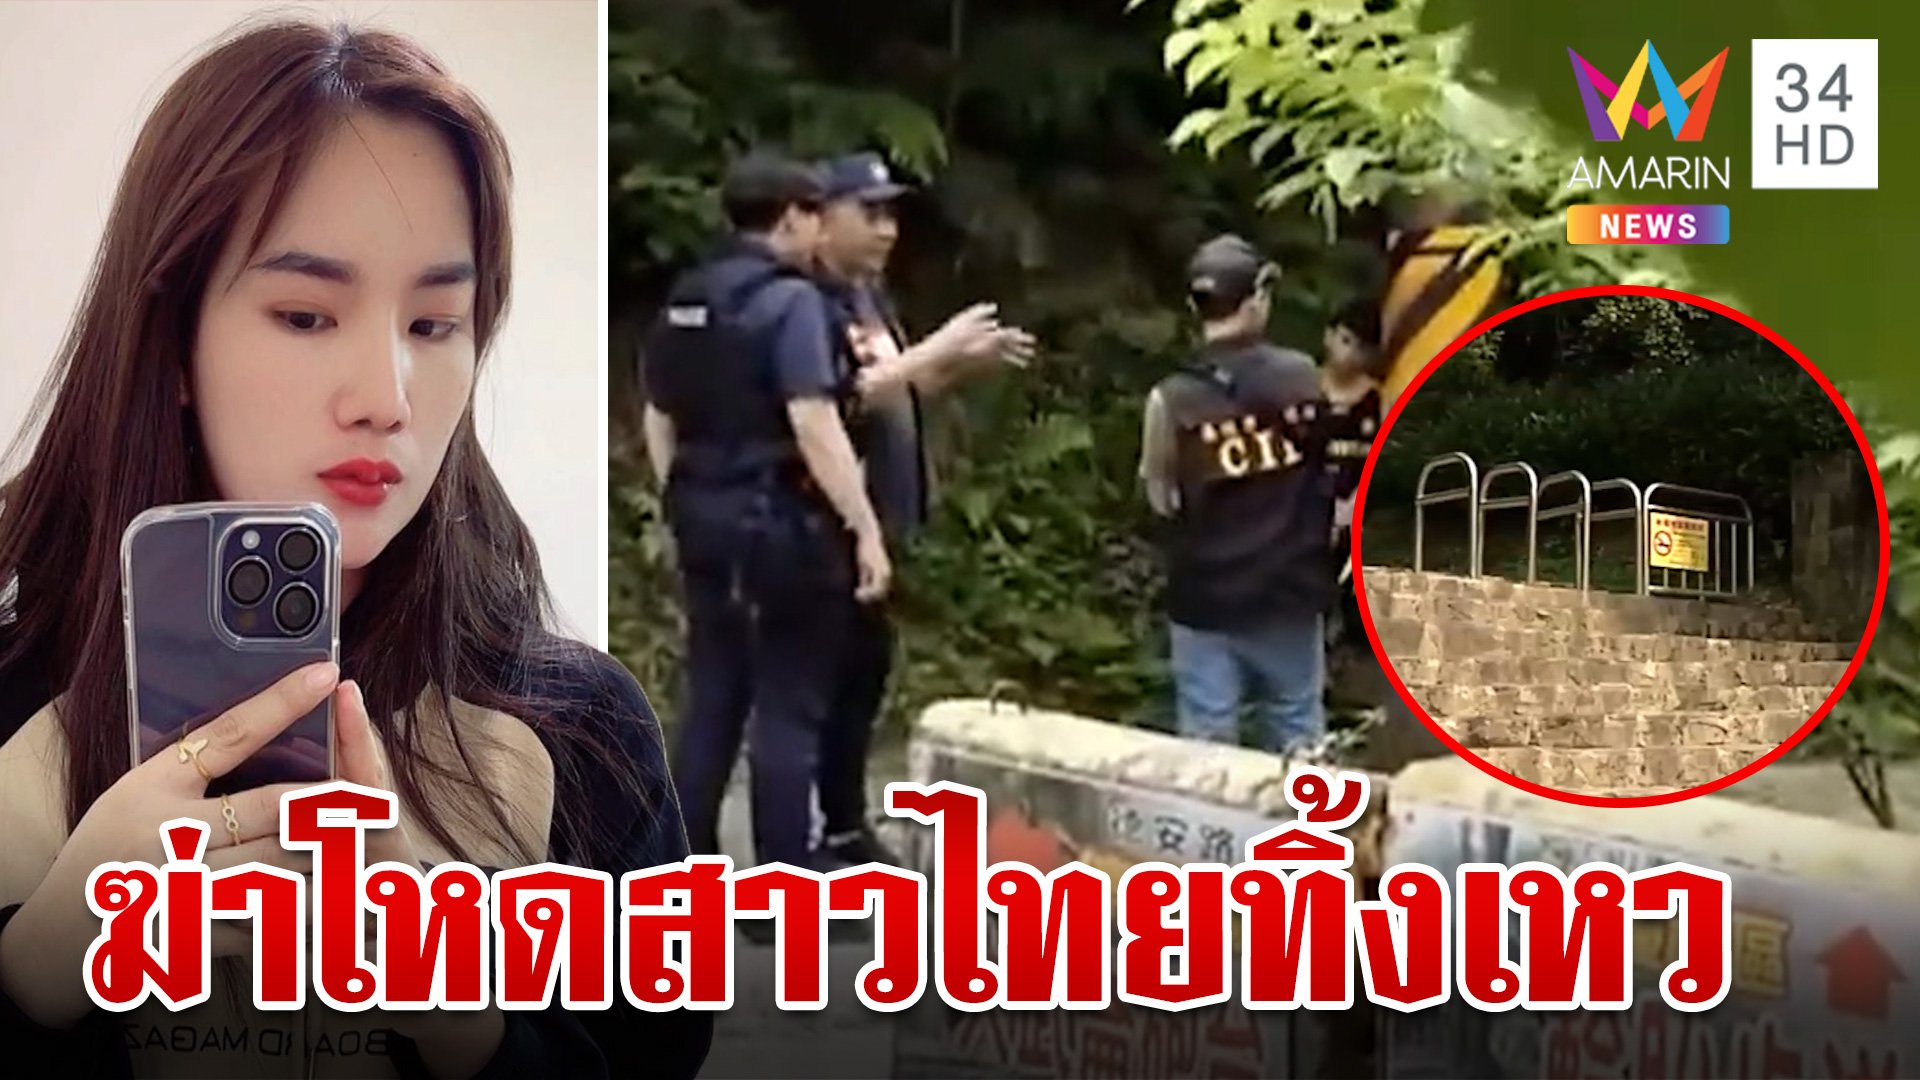 นายจ้างโหดฆ่าสาวไทยลูก 2 ทิ้งเหว แม่ร่ำไห้แฉก่อนตายถูกกดขี่สารพัด | ทุบโต๊ะข่าว | 12 พ.ค. 67 | AMARIN TVHD34